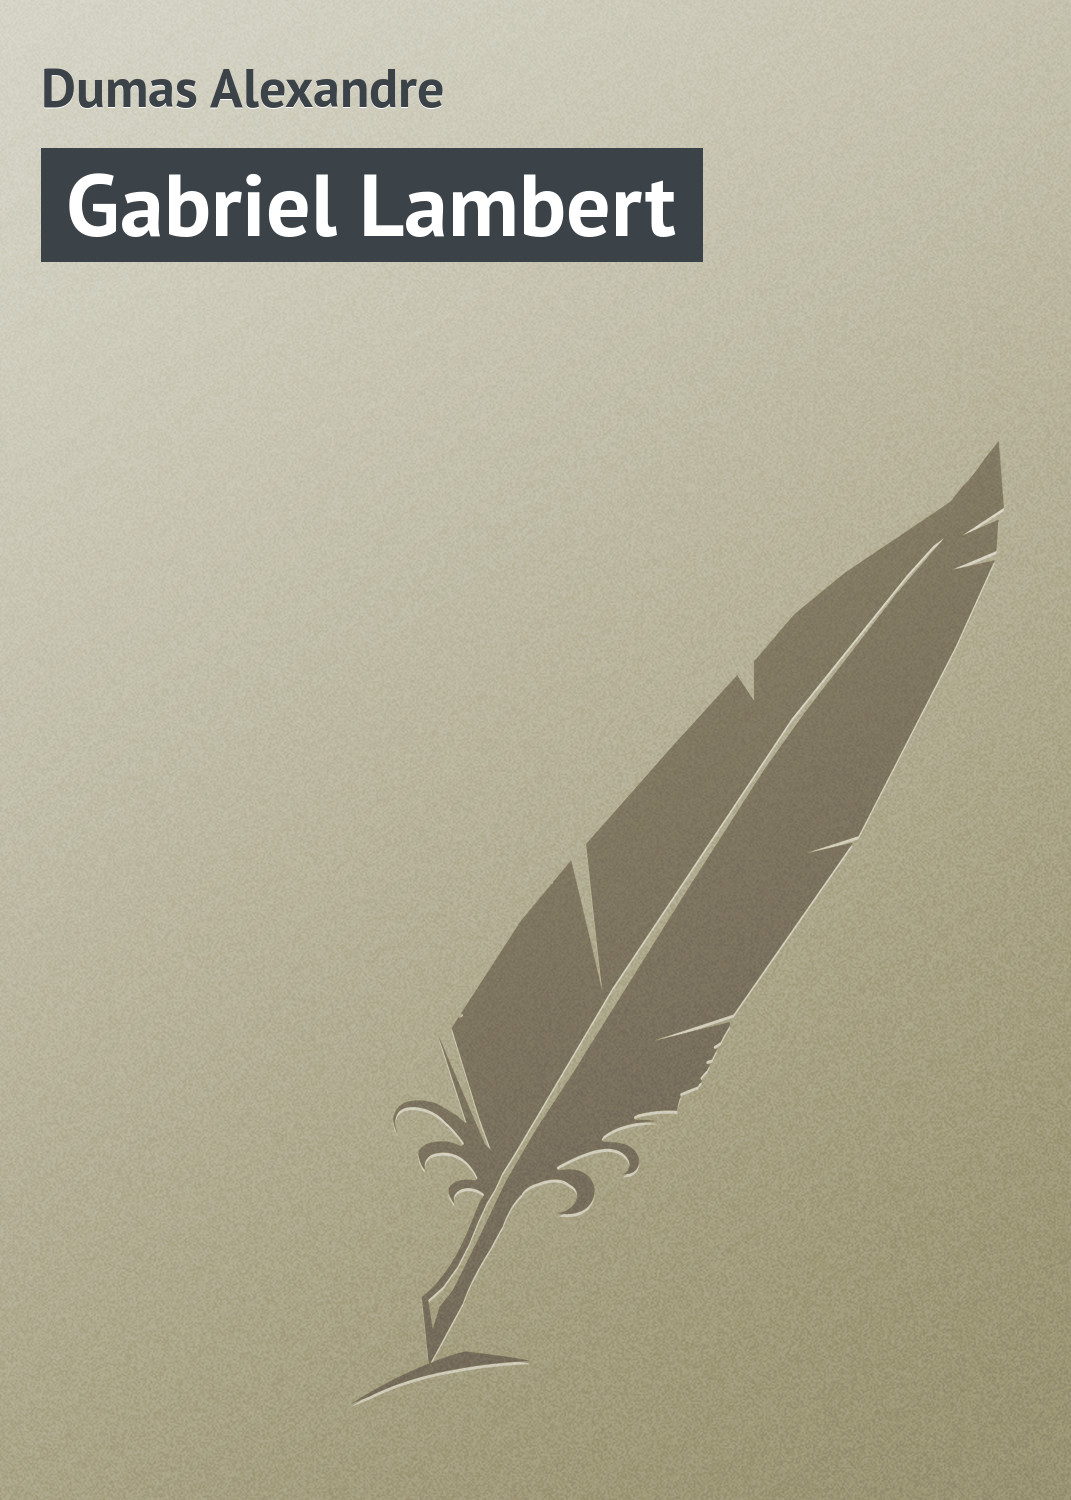 Книга Gabriel Lambert из серии , созданная Alexandre Dumas, может относится к жанру Зарубежная классика. Стоимость электронной книги Gabriel Lambert с идентификатором 23160291 составляет 5.99 руб.